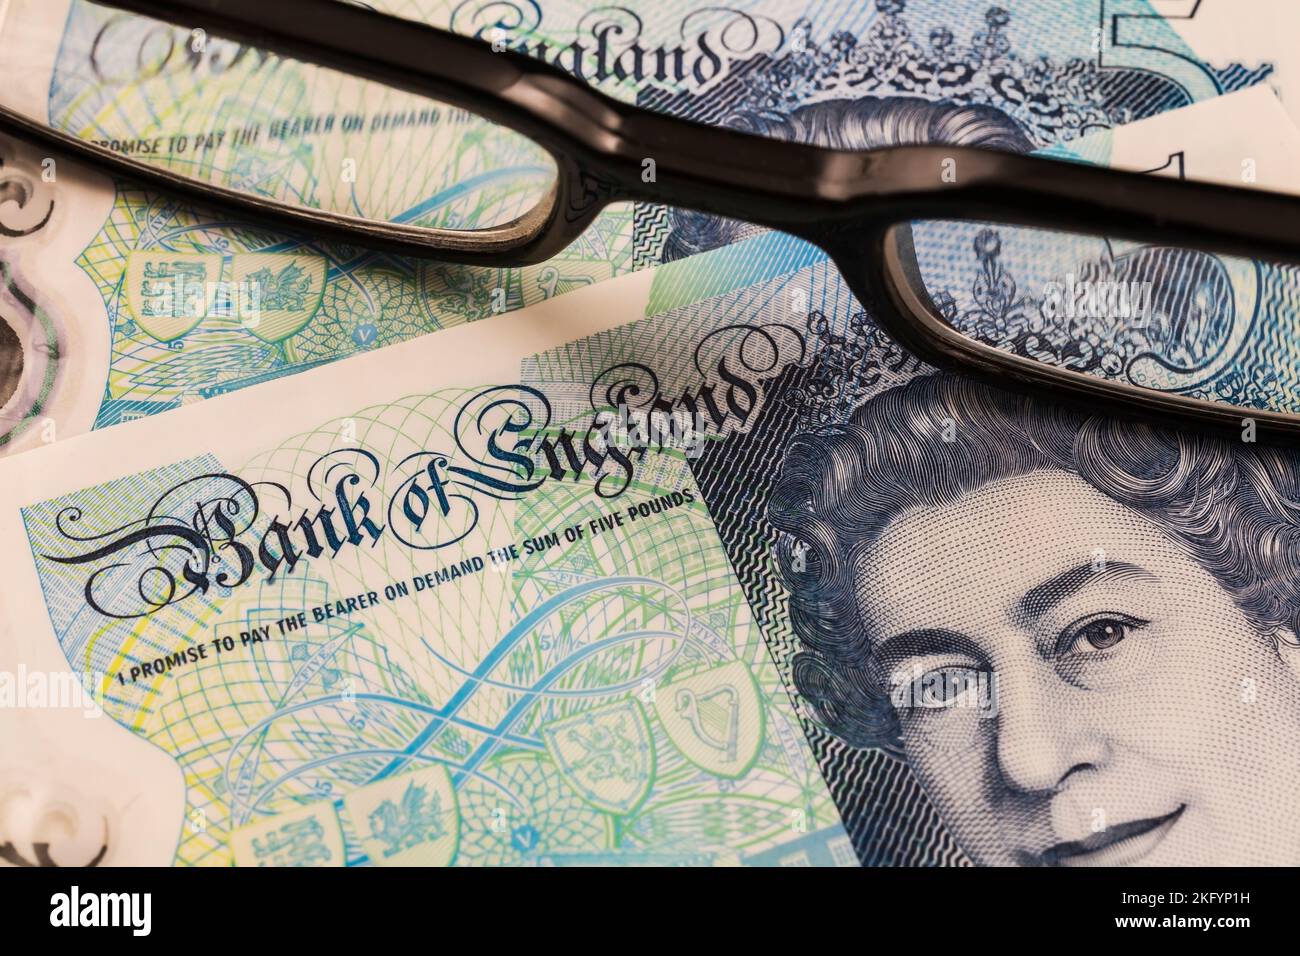 Portrait de la reine Elizabeth II sur la Banque d'Angleterre cinq livre note à travers des lunettes de lecture noires. Banque D'Images